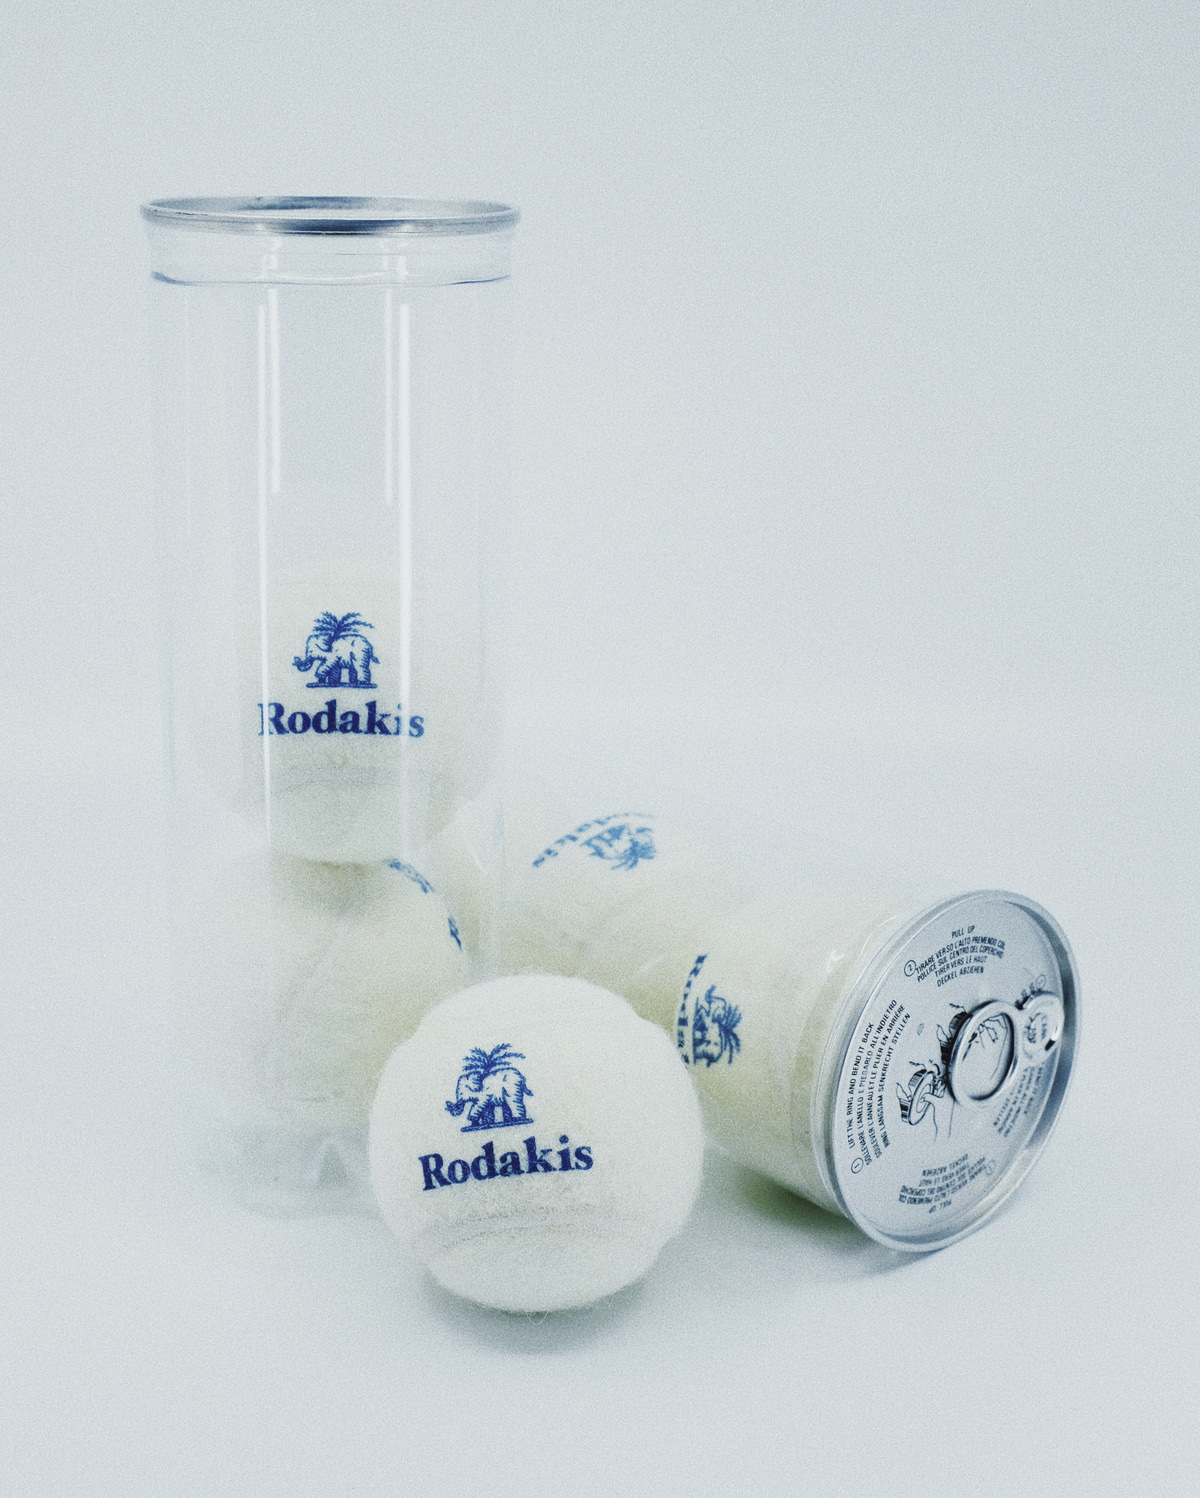 Image result for rodakis tennis balls